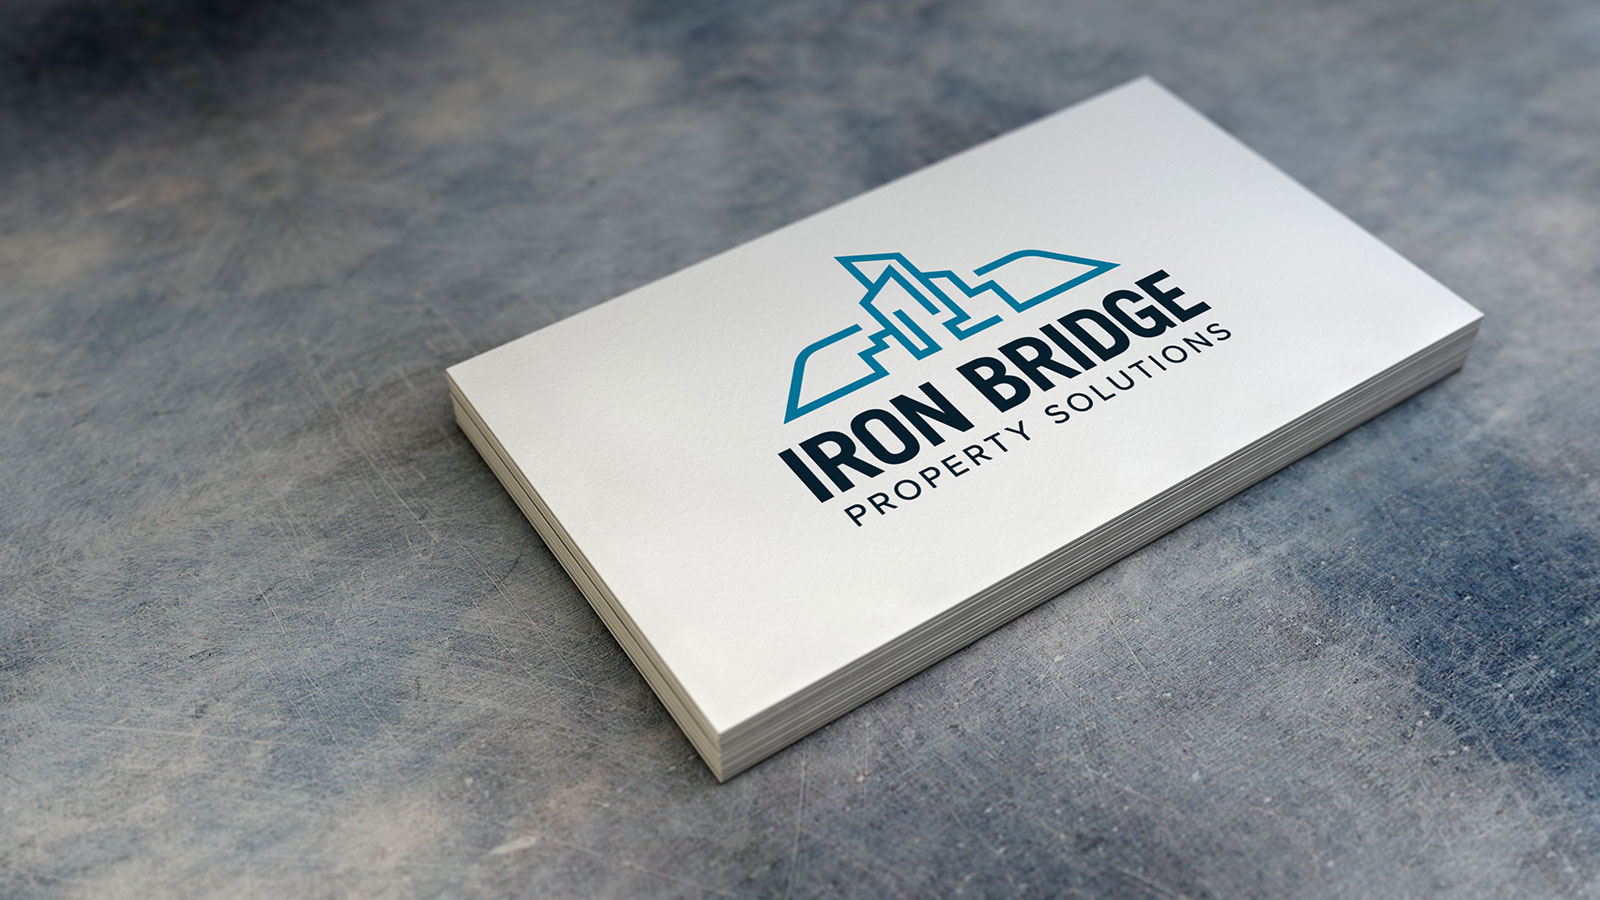 IronBridge Final Logo Design on a Business Card